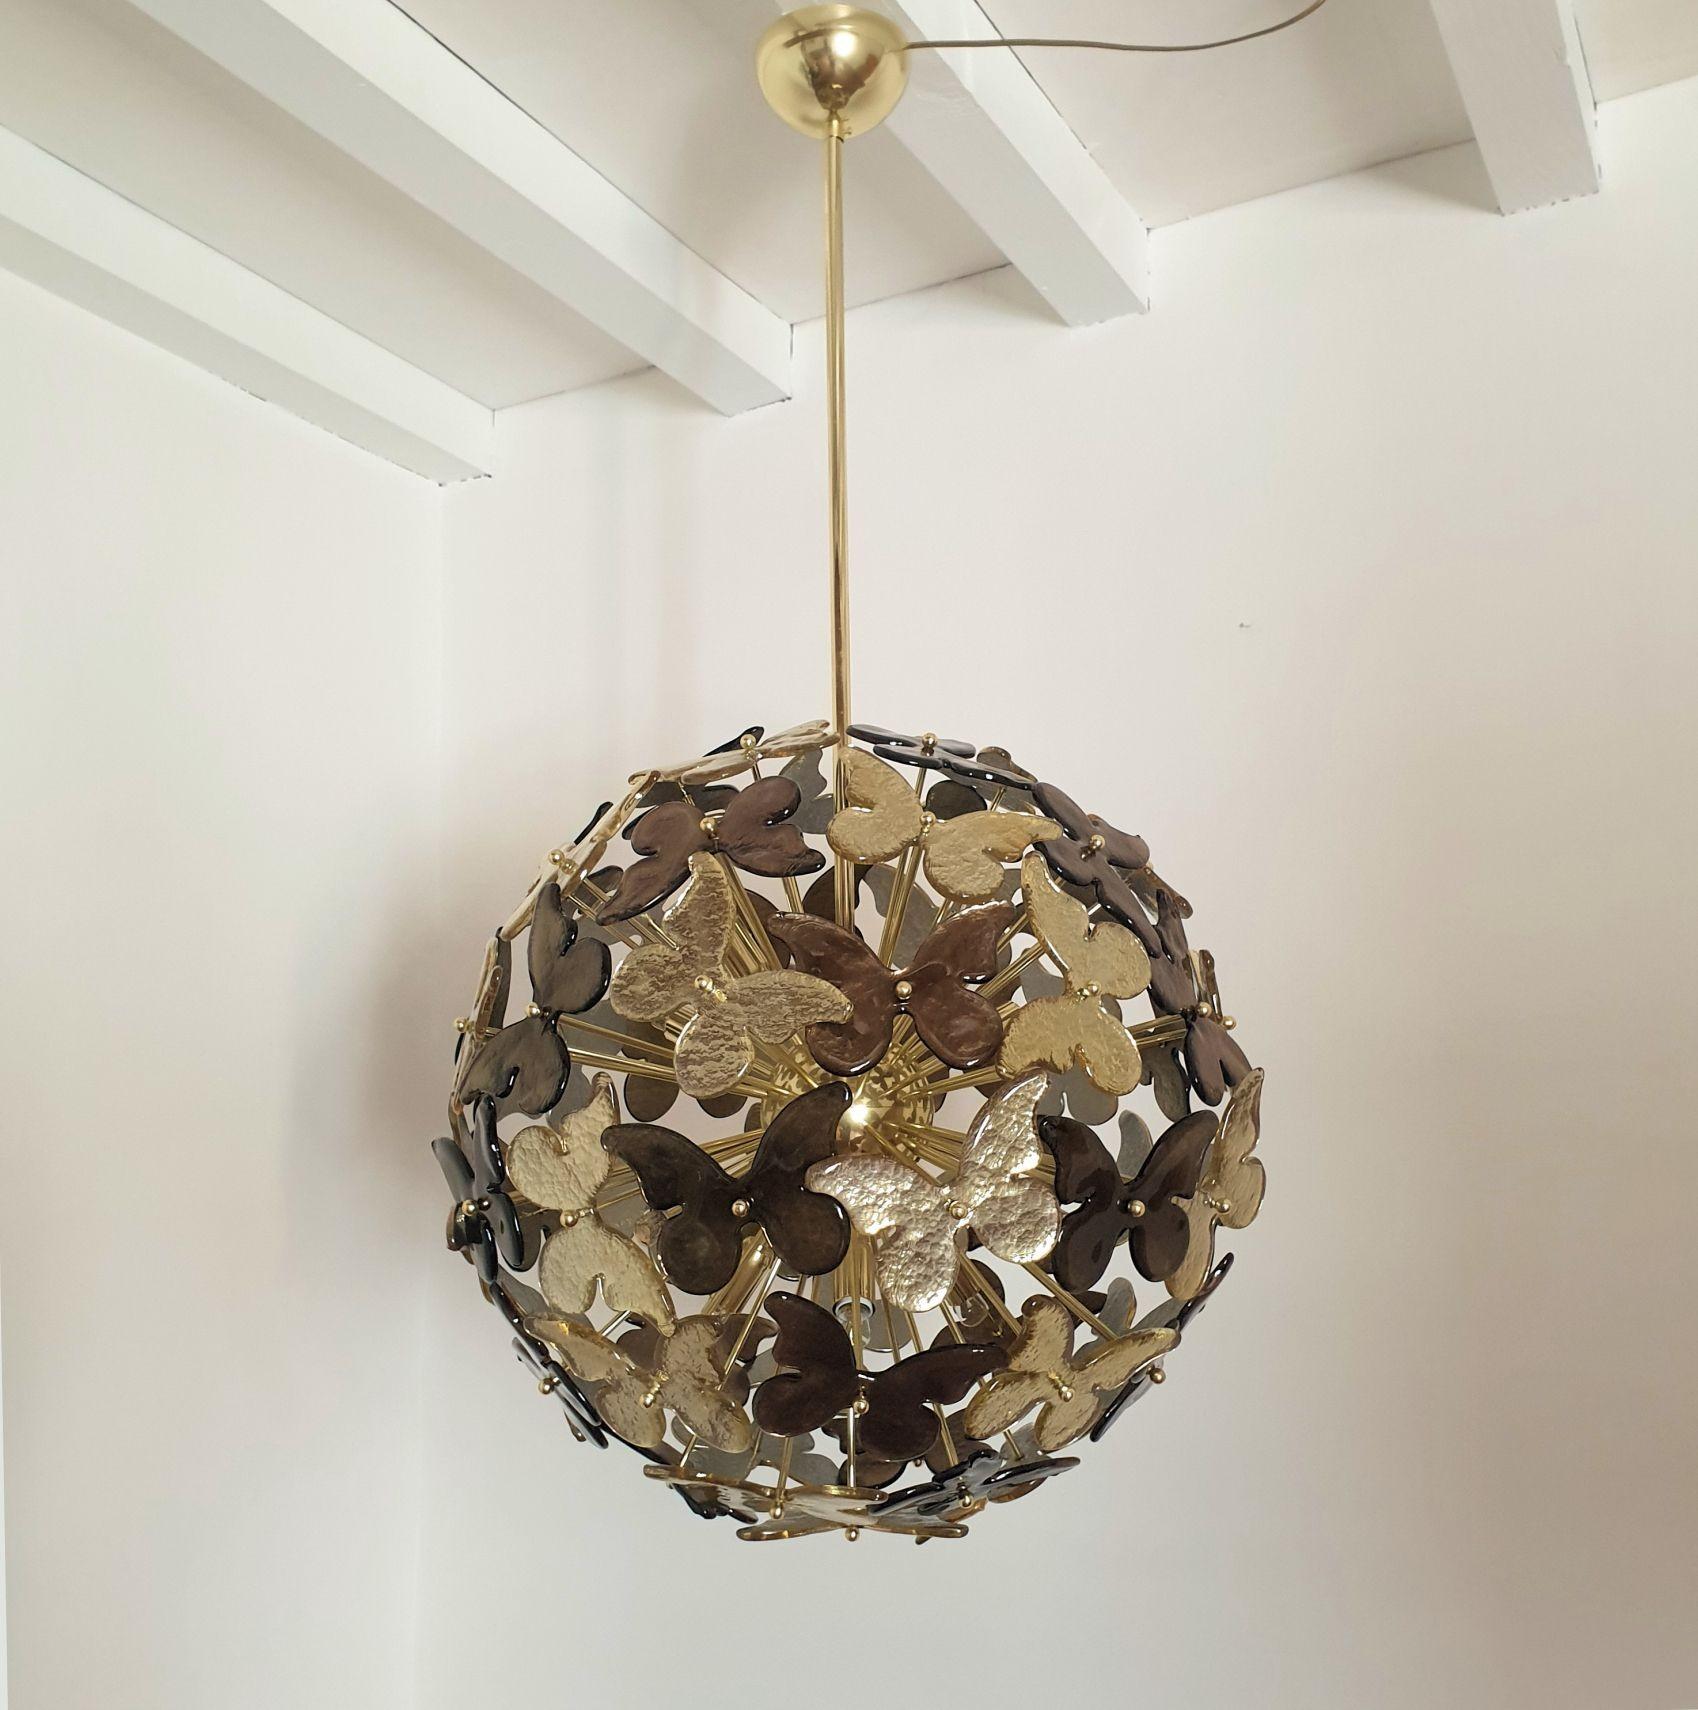 Großer Sputnik-Kronleuchter aus Murano-Glas, zugeschrieben Mazzega, 1980er Jahre, Italien.
Der italienische Murano-Glas-Kronleuchter hat einen polierten Messingrahmen, mit 12 Lichtern und ist professionell für die USA mit Candelabra-Fassungen oder